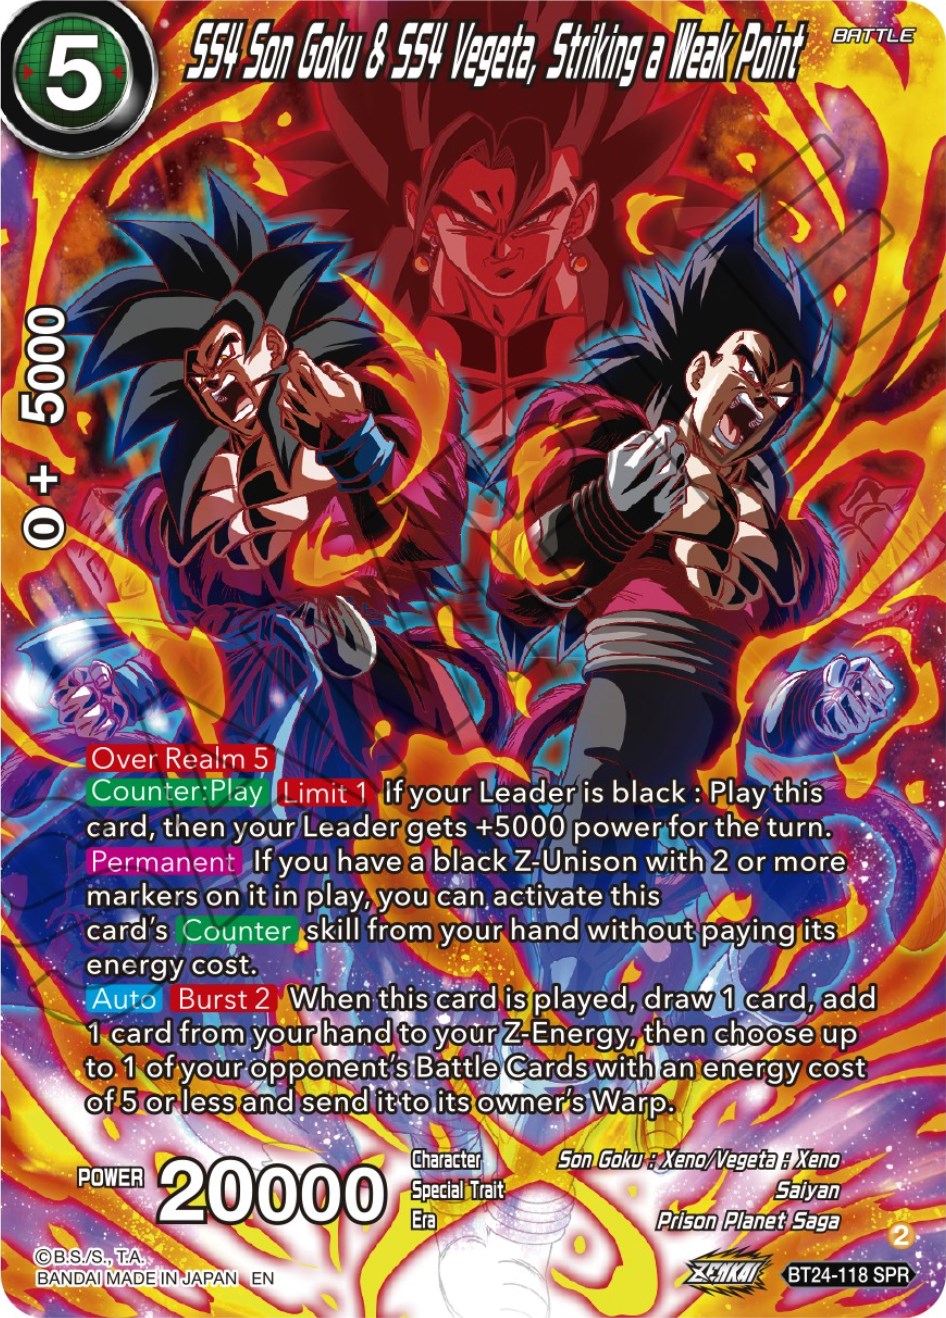 SS4 Son Goku & SS4 Vegeta, Striking a Weak Point (SPR) (BT24-118) [Beyond Generations] | Devastation Store